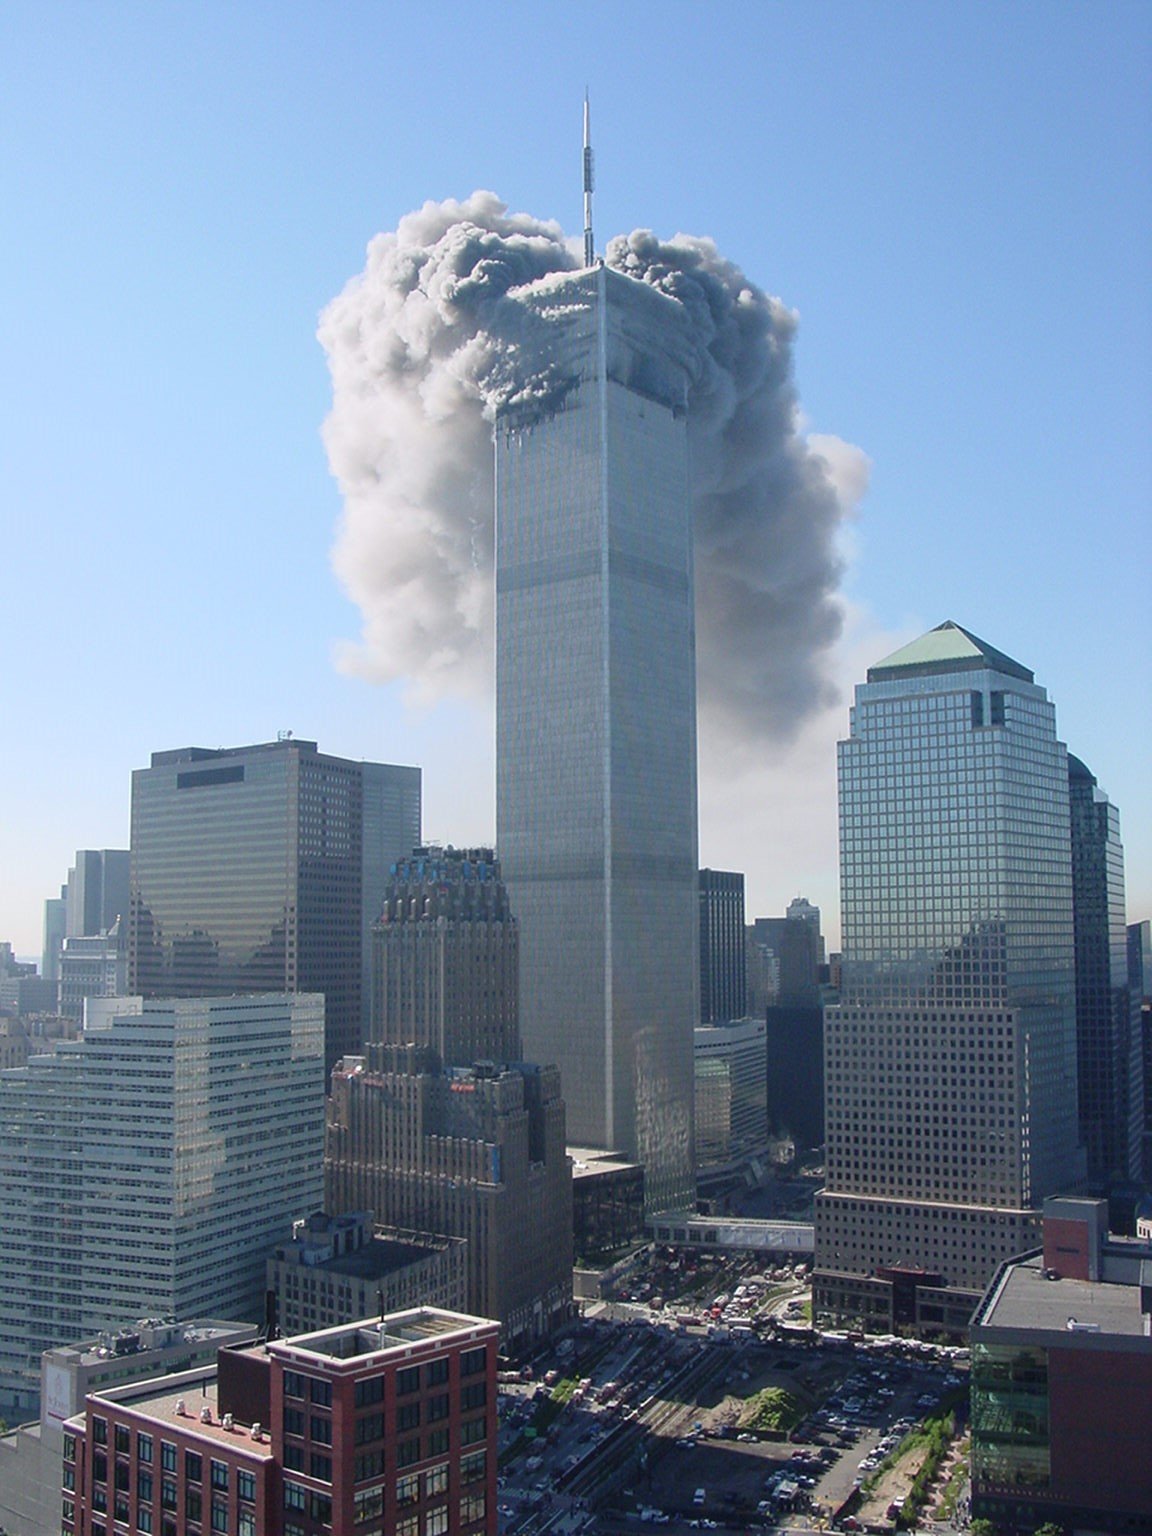 Сколько этажей было в башнях близнецах. Башни ВТЦ В Нью-Йорке. ВТЦ Нью-Йорк башни Близнецы. Северная башня ВТЦ 11 сентября. Северной башни (ВТЦ-1).